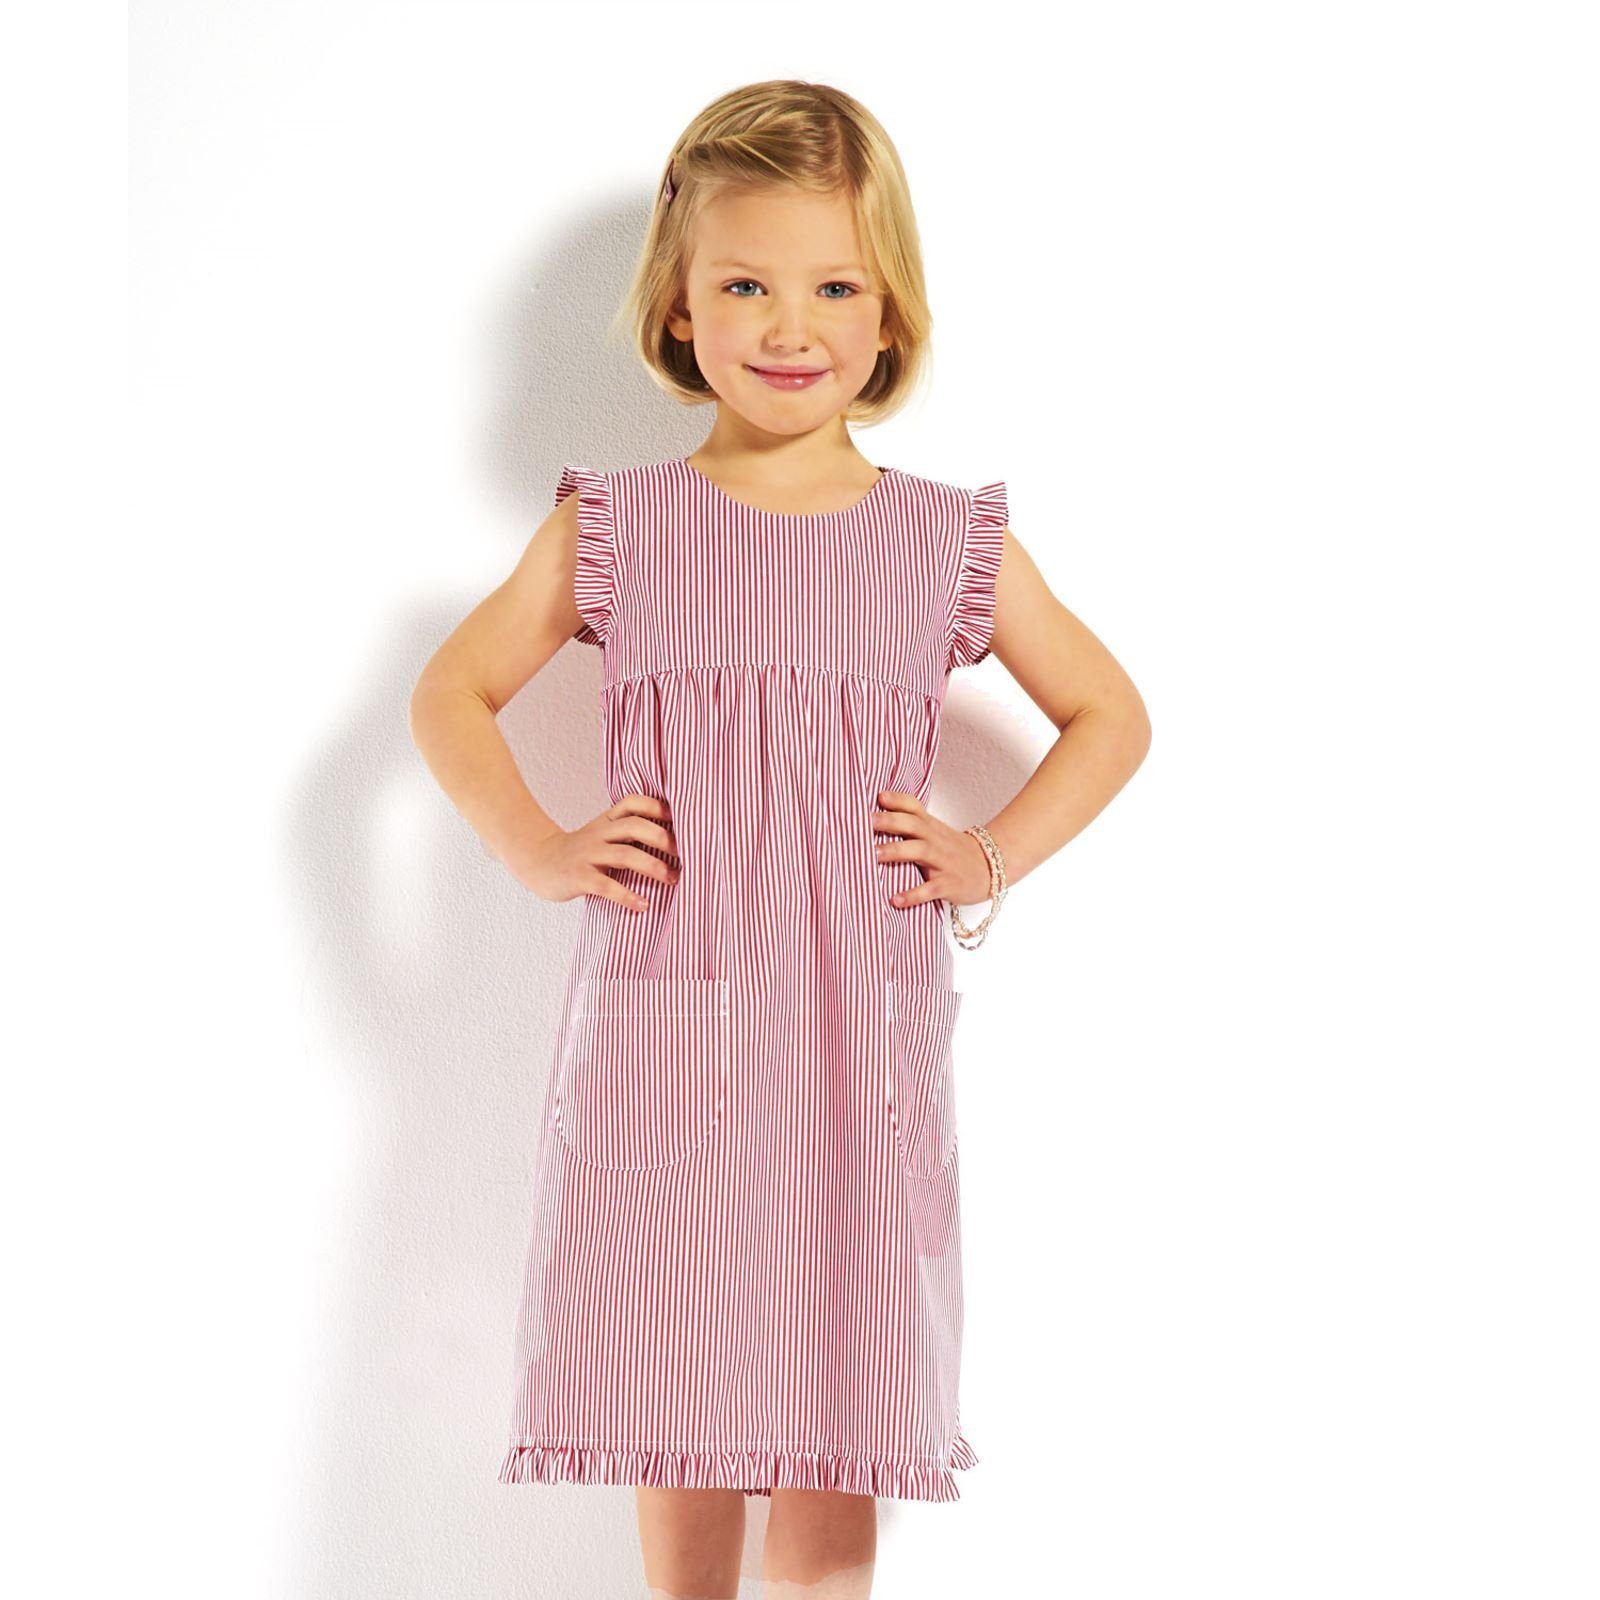 Sommerkleid - Streifen Rüschen Kinder modAS gestreift (023) Mädchenkleid mit mit Kleid gestreift rot/weiß